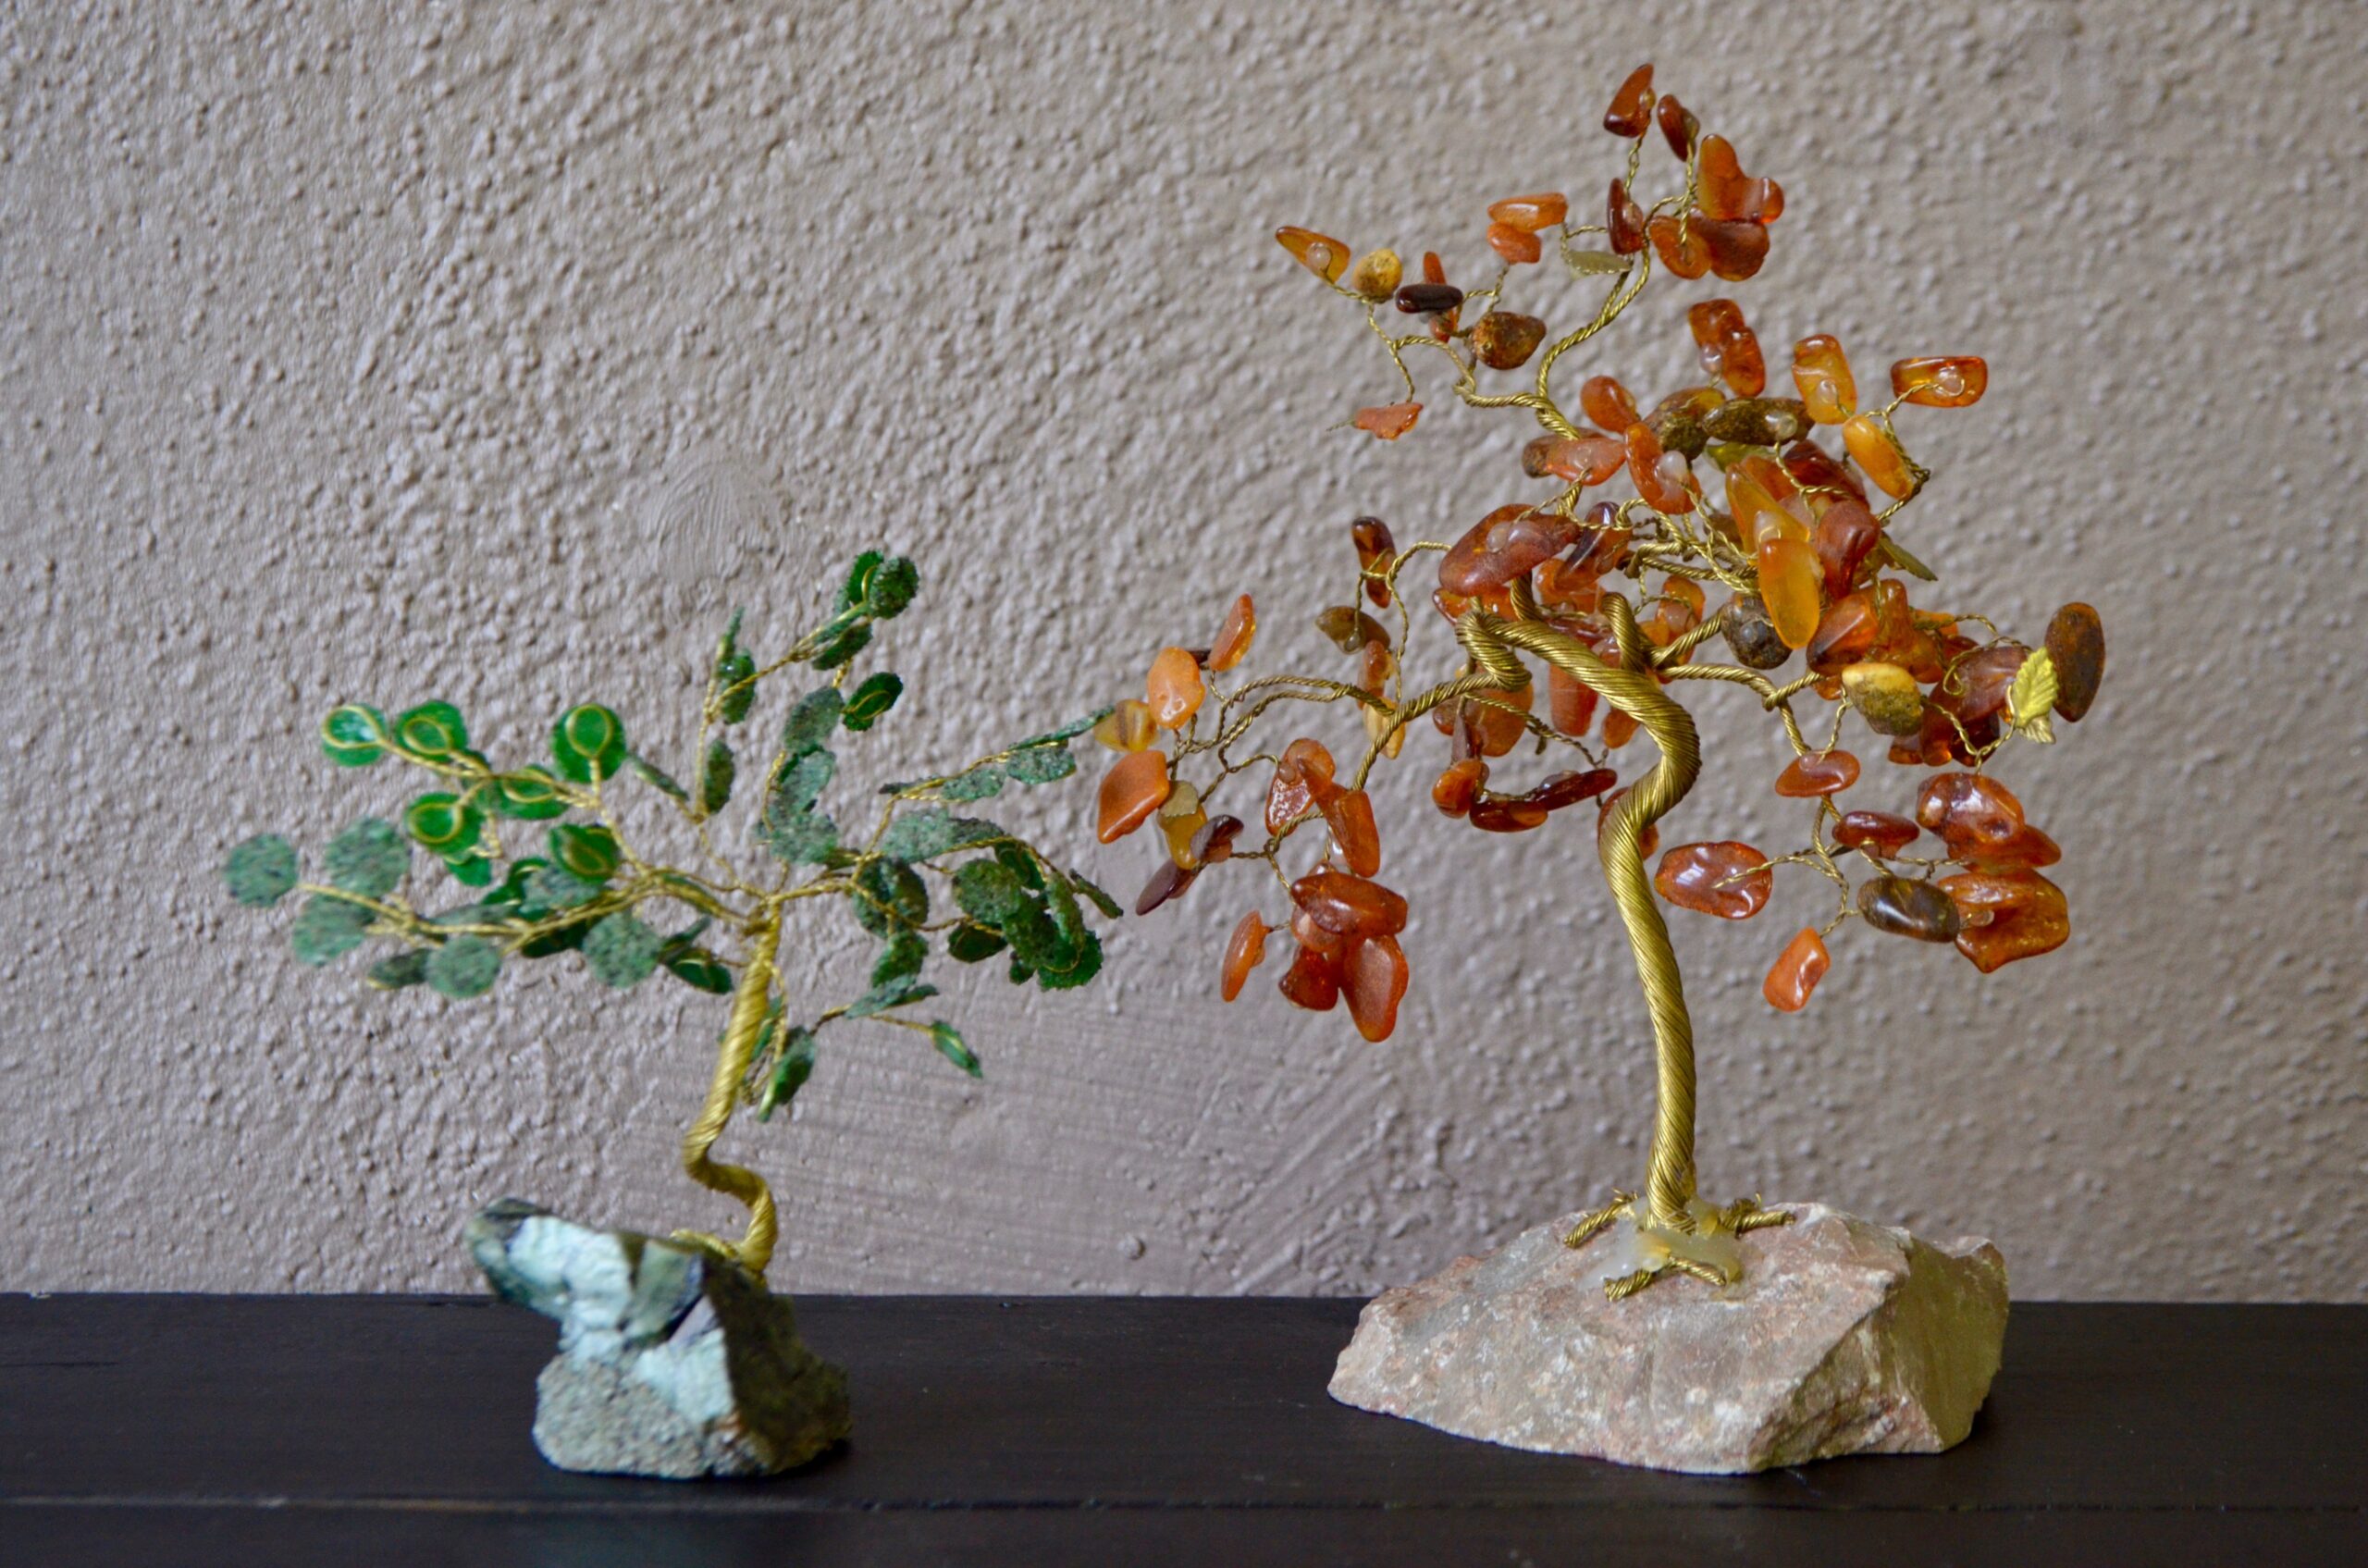 Ce duo de petites arbres sculpture est émouvant. Production artisanale ou domestique, ces délicates pièces décoratives sont réalisées en fil de cuivre et pâte de verre.